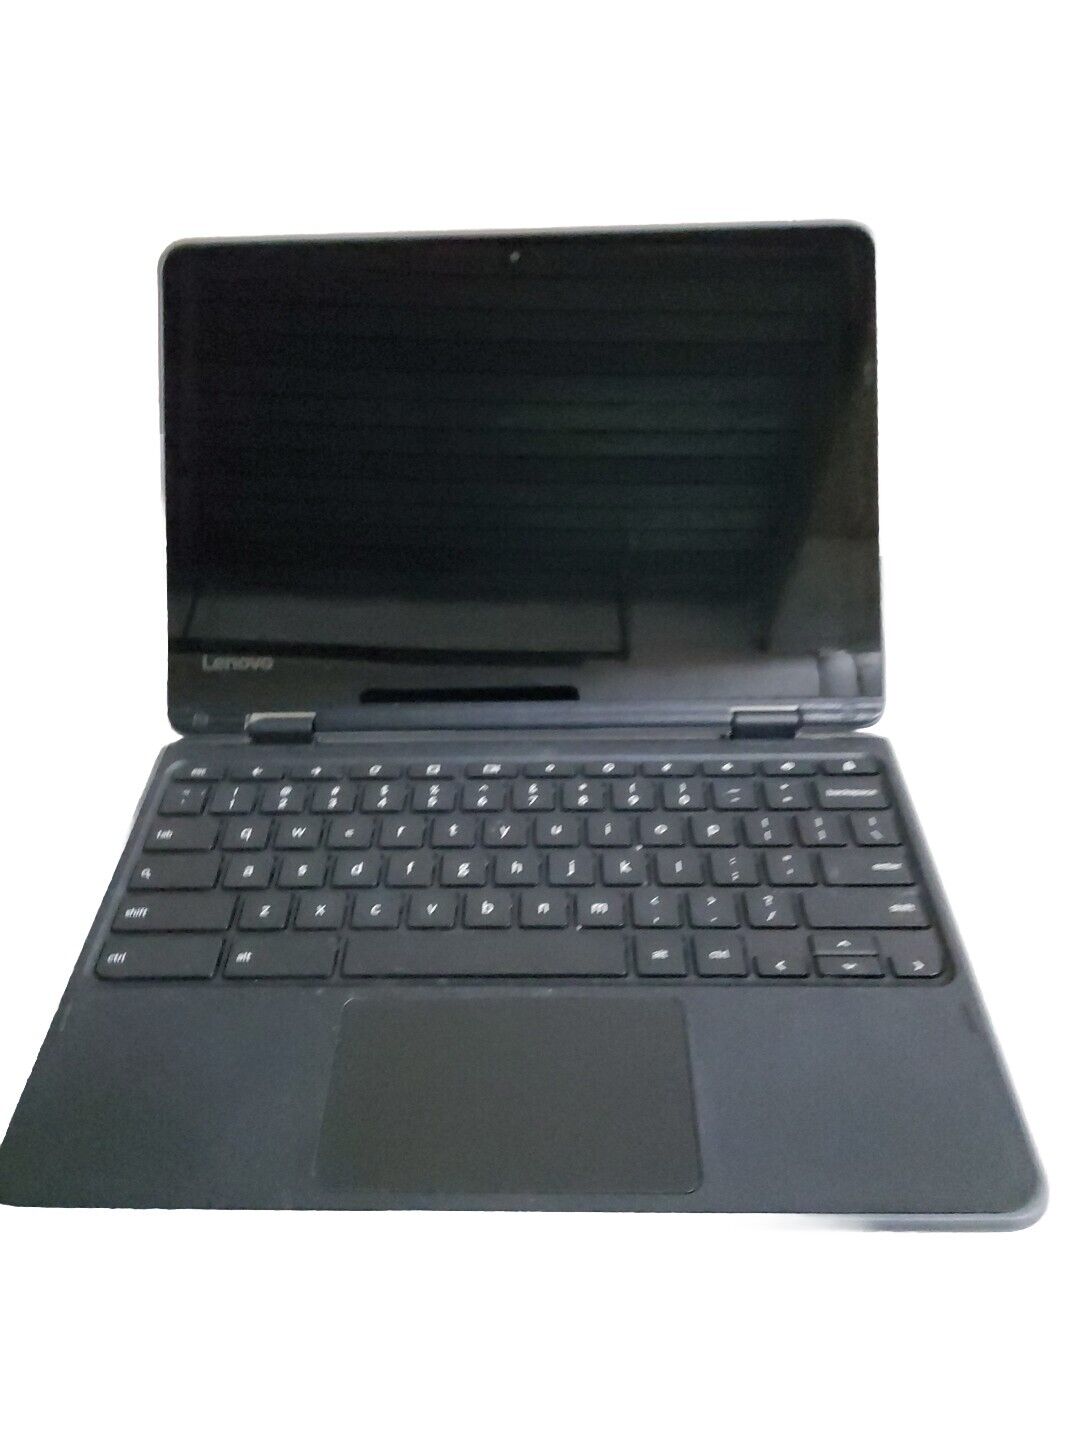 Lenovo 300e Chromebook 11.6'' (32 GB, 4 GB) B Grade Please Read Description